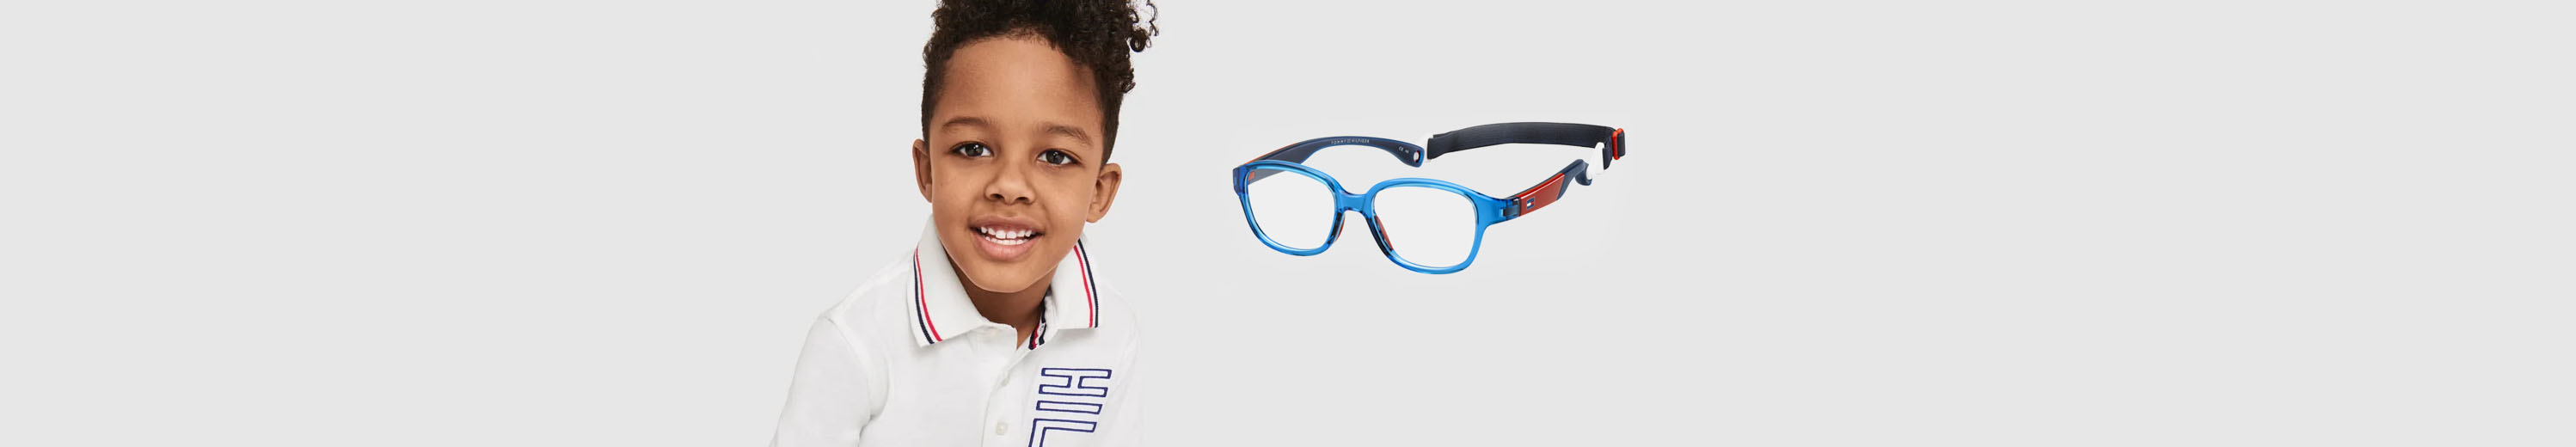 Tommy Hilfiger Eyeglasses for Kids